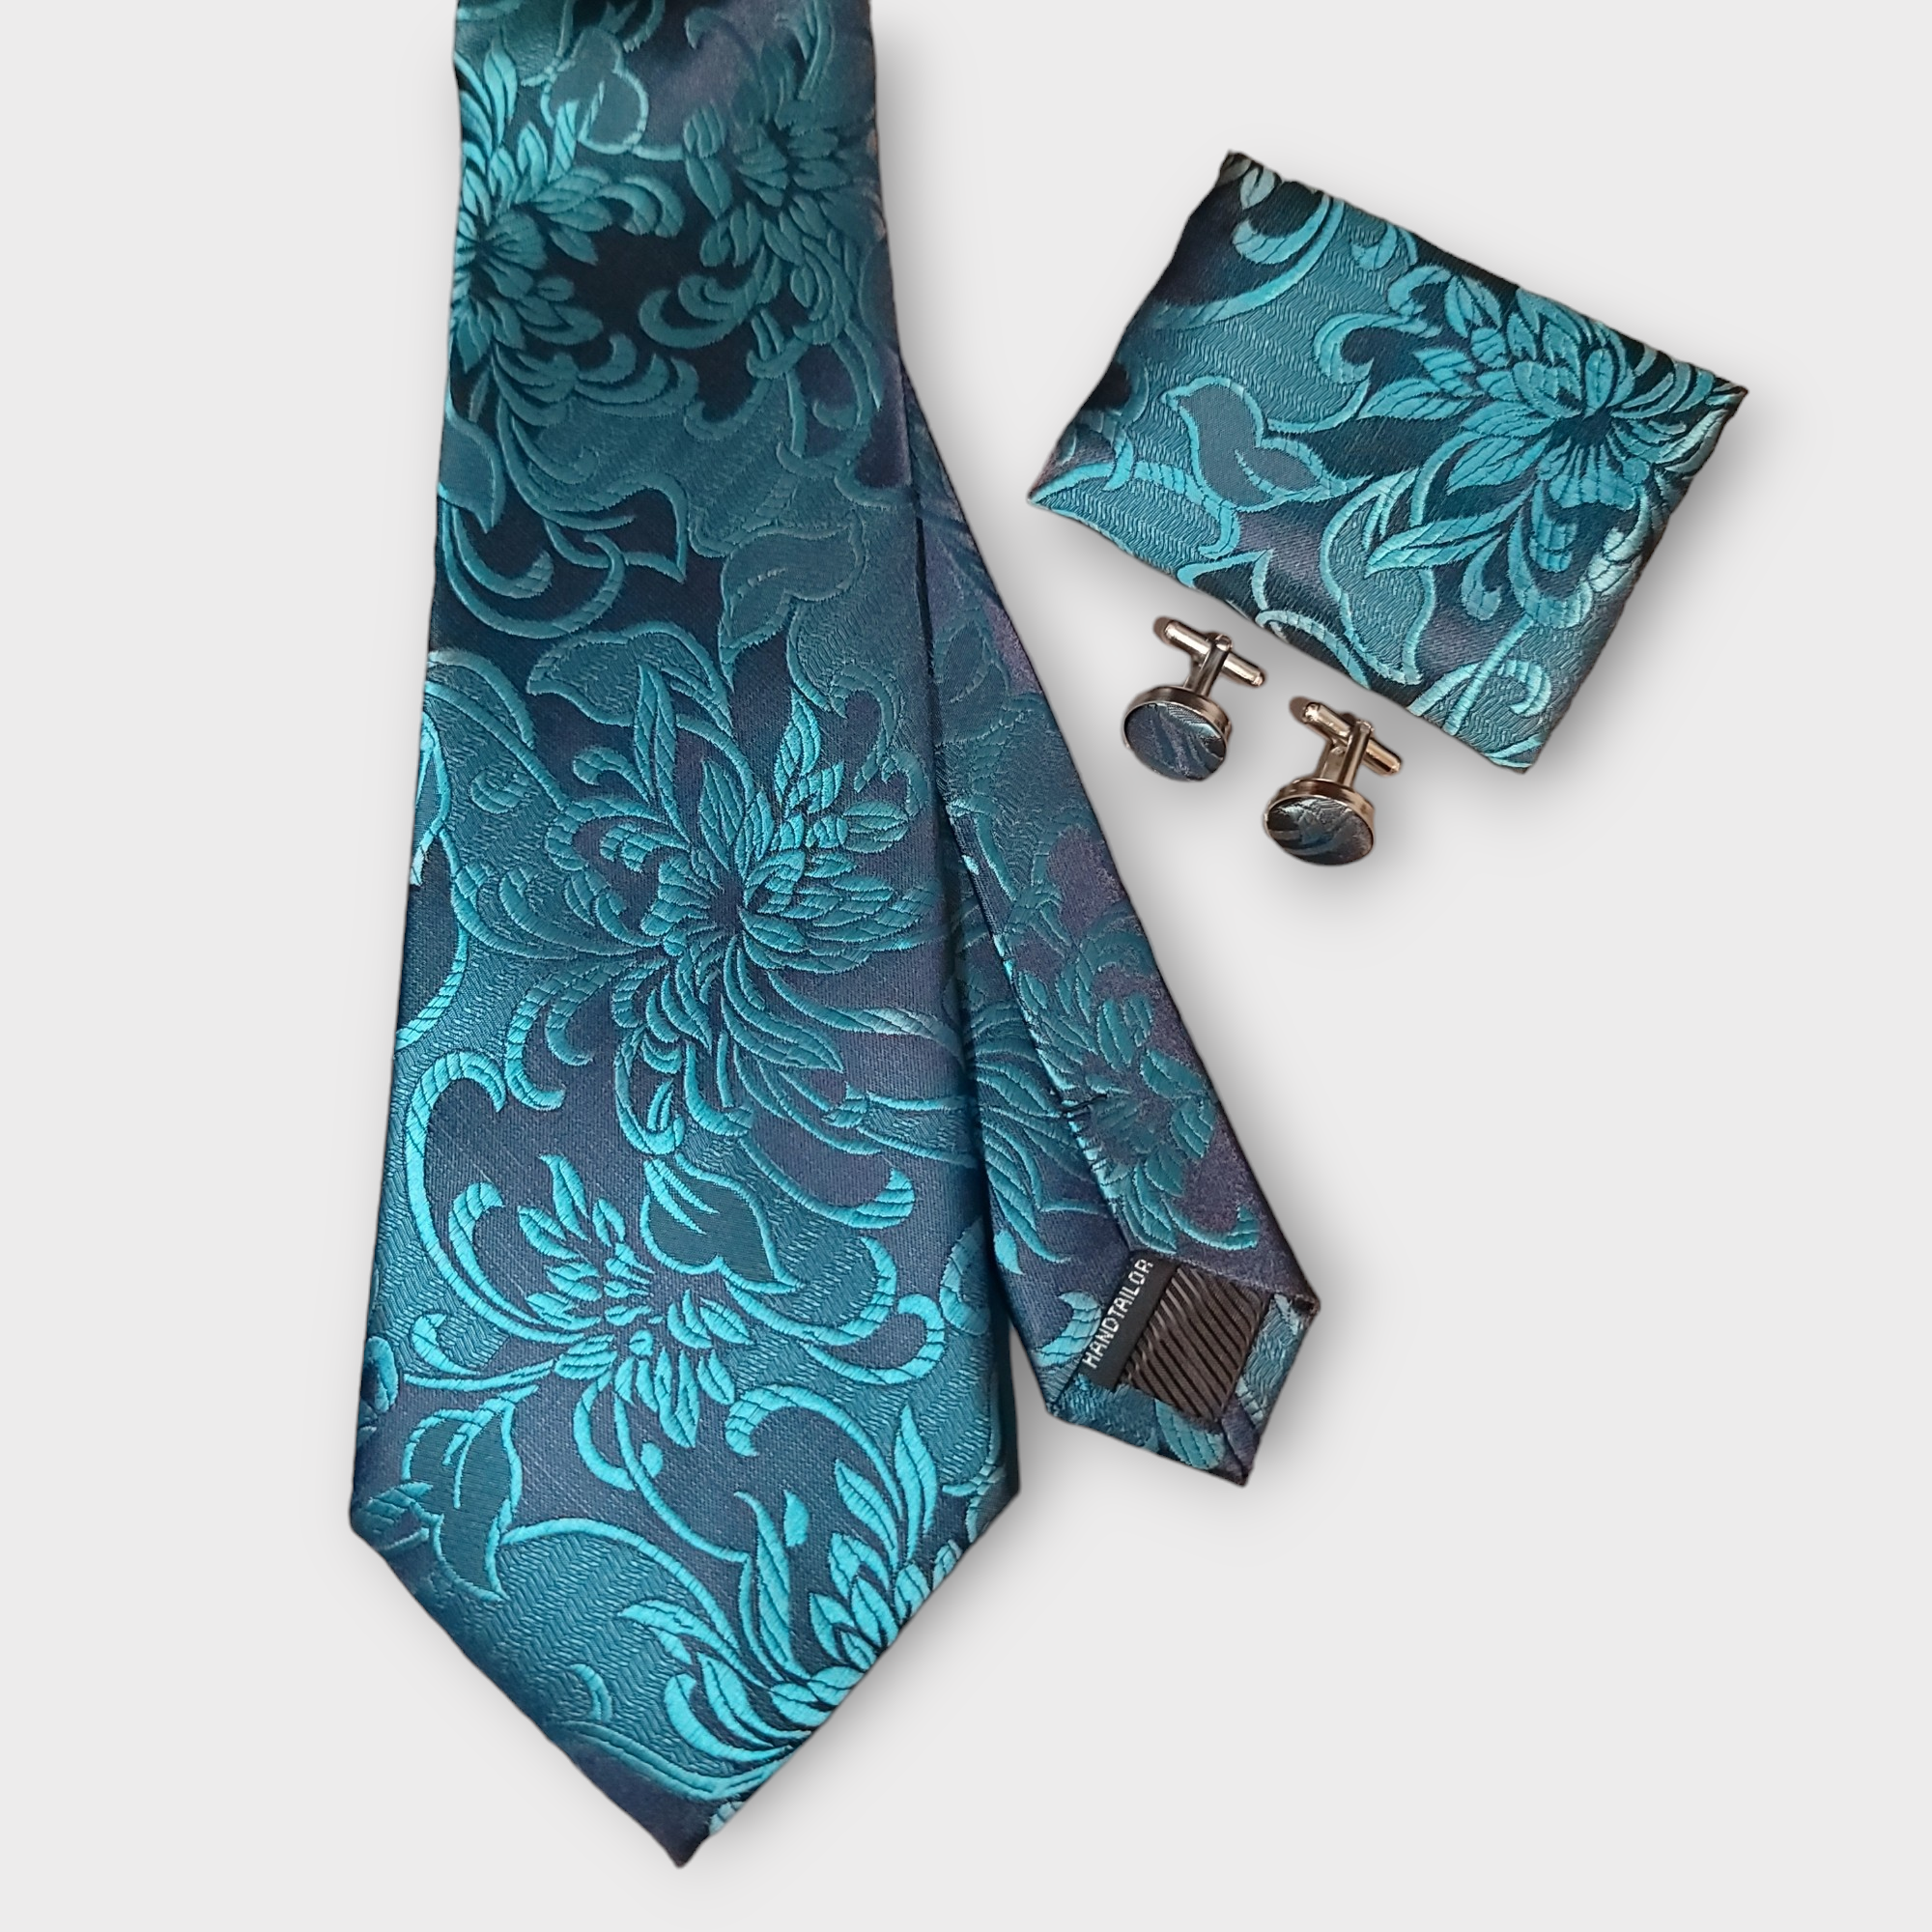 Steel Blue Silk Tie Pocket Square Cufflink Set